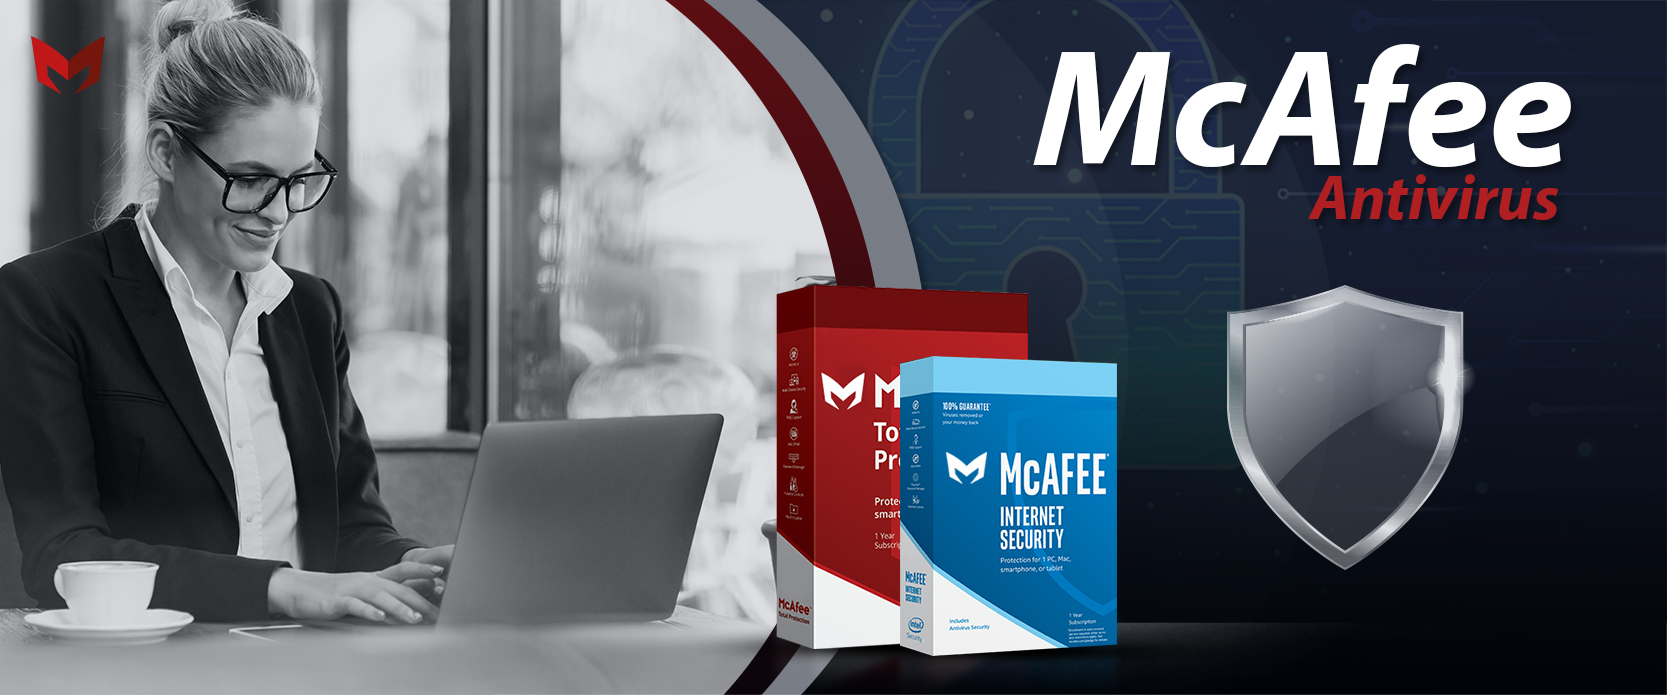 download mcafee antivirus free